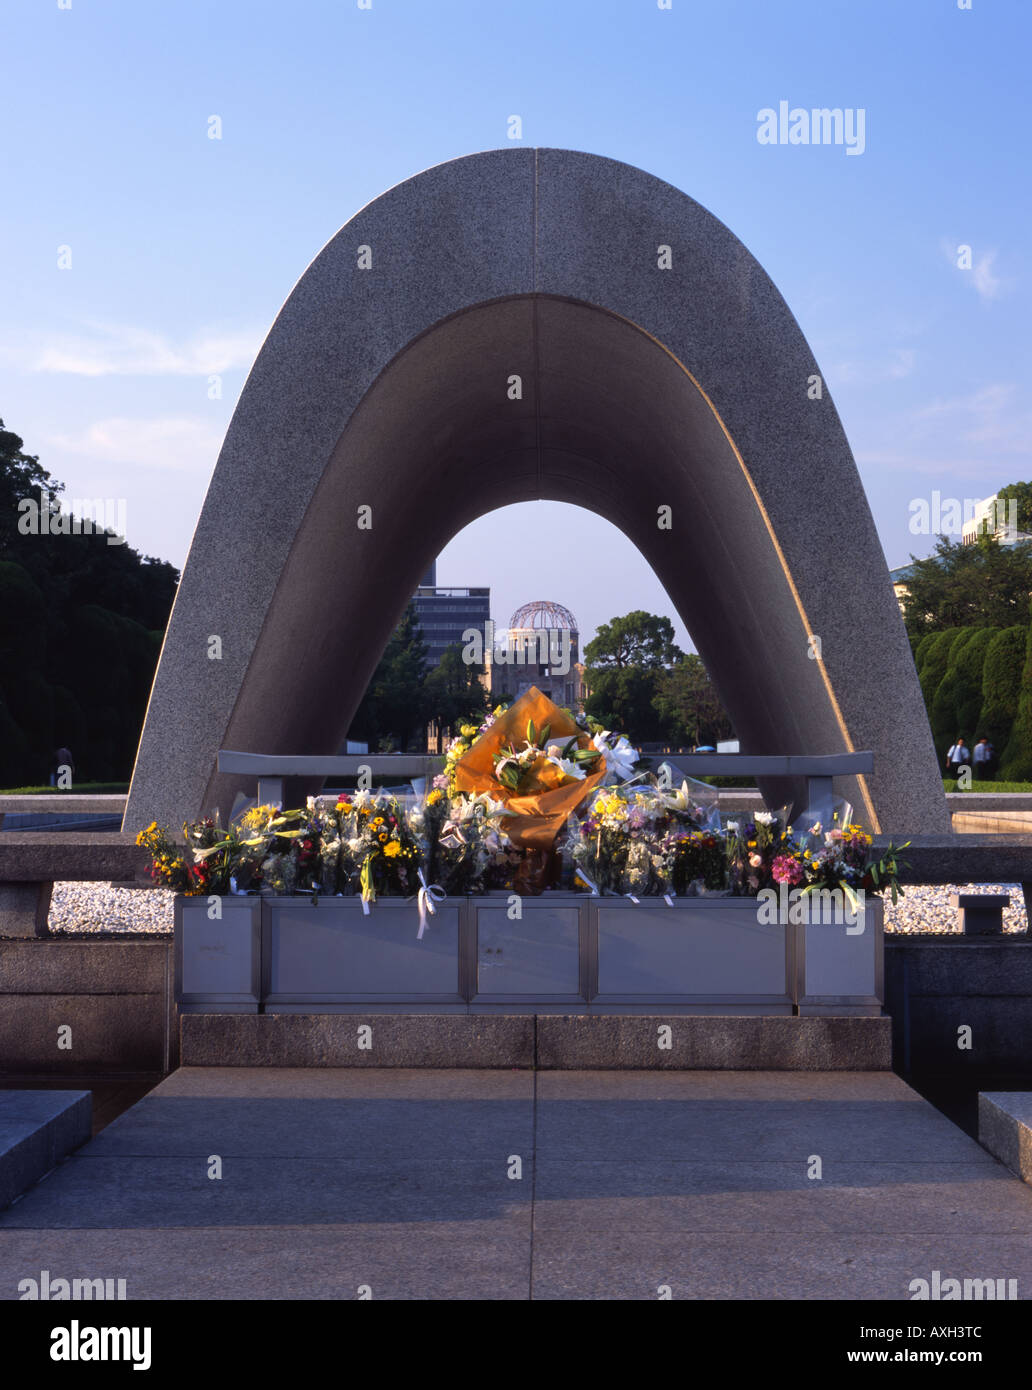 Il cenotafio nel Parco del Memoriale della Pace di Hiroshima. La Cupola di Bomba atomica in background è un sito Patrimonio Mondiale dell'UNESCO. Foto Stock